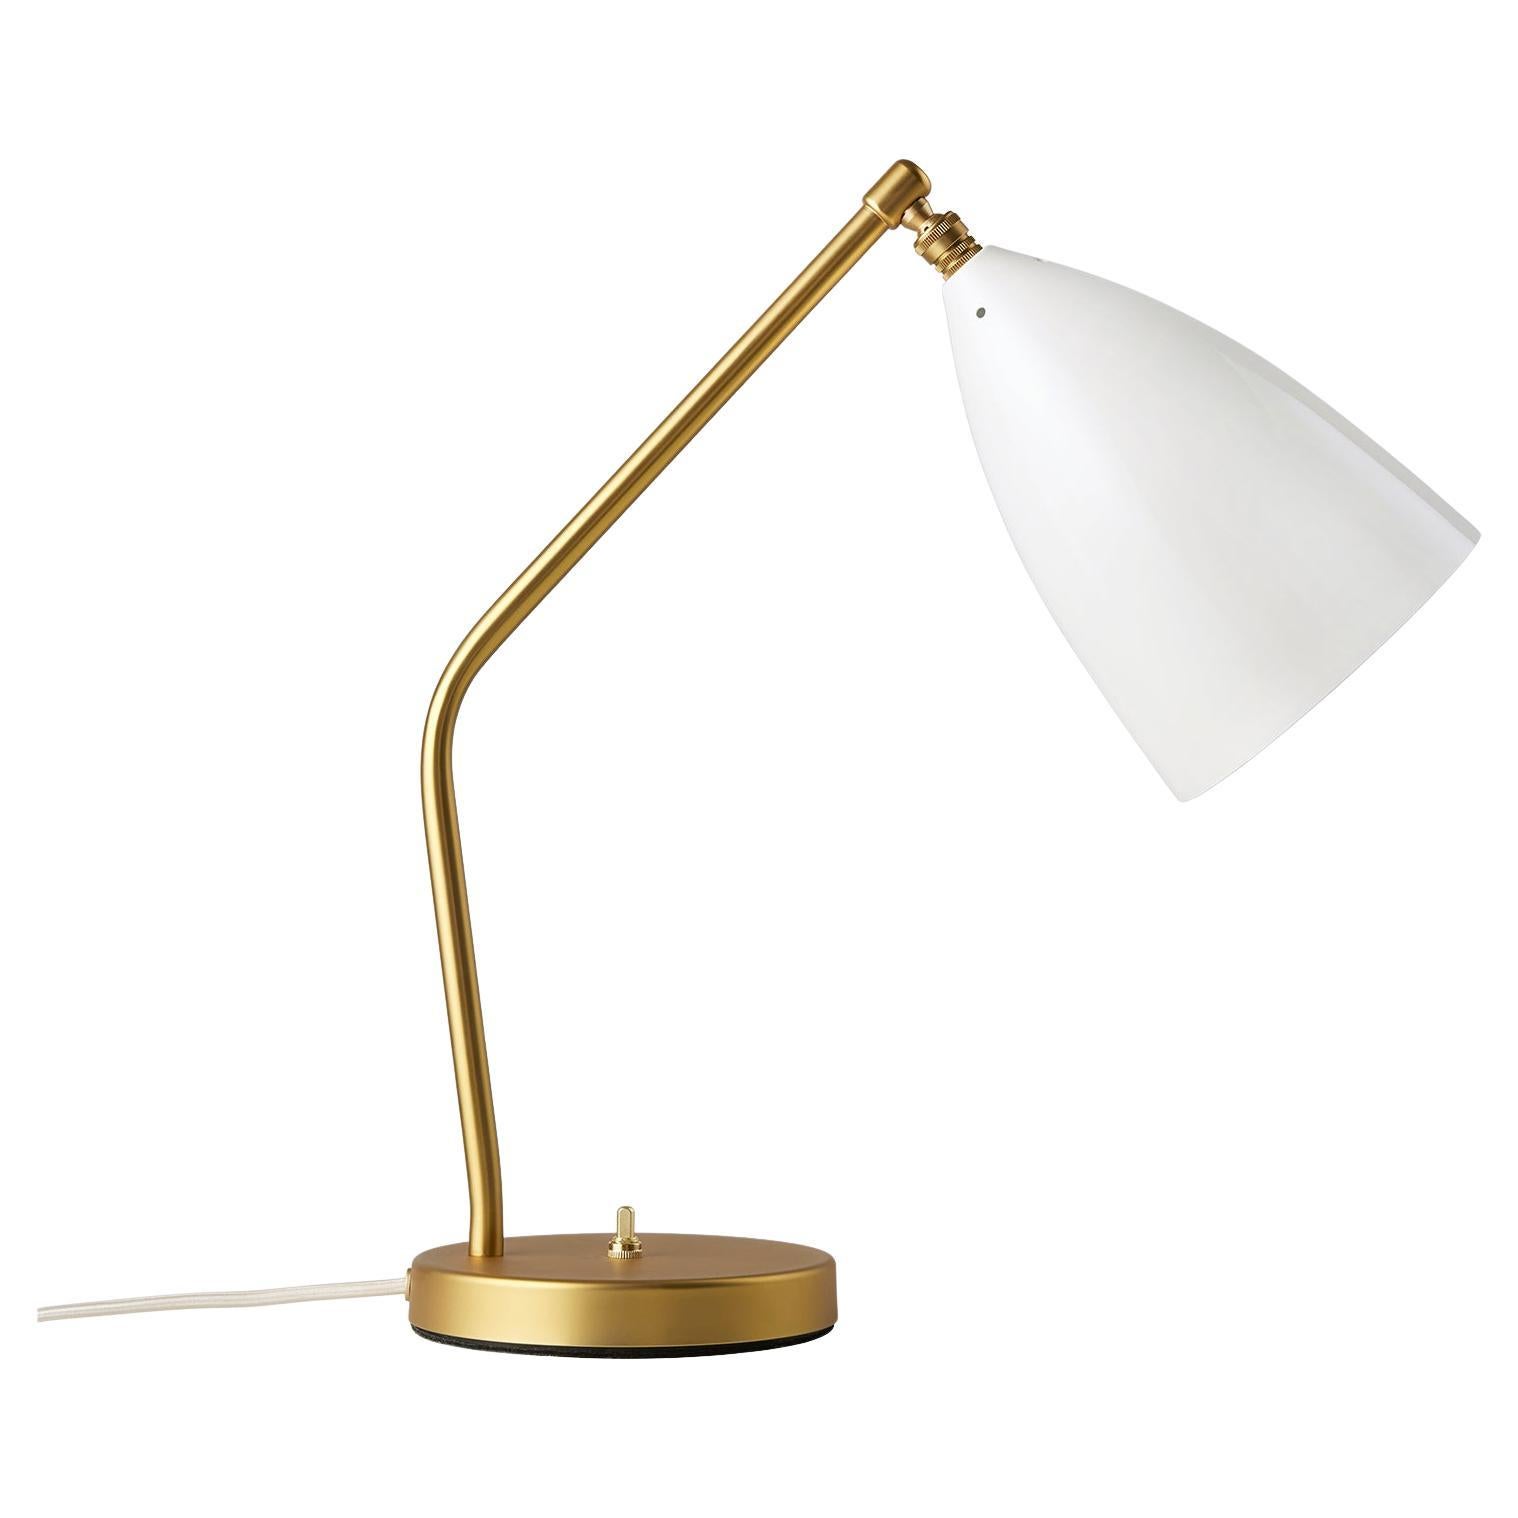 Greta M. Grossman a conçu la lampe de table emblématique Gräshoppa en 1947. Avec son design à la fois sophistiqué et ludique, elle est toujours aussi pertinente aujourd'hui. L'abat-jour conique allongé et distinctif est magnifiquement associé à un